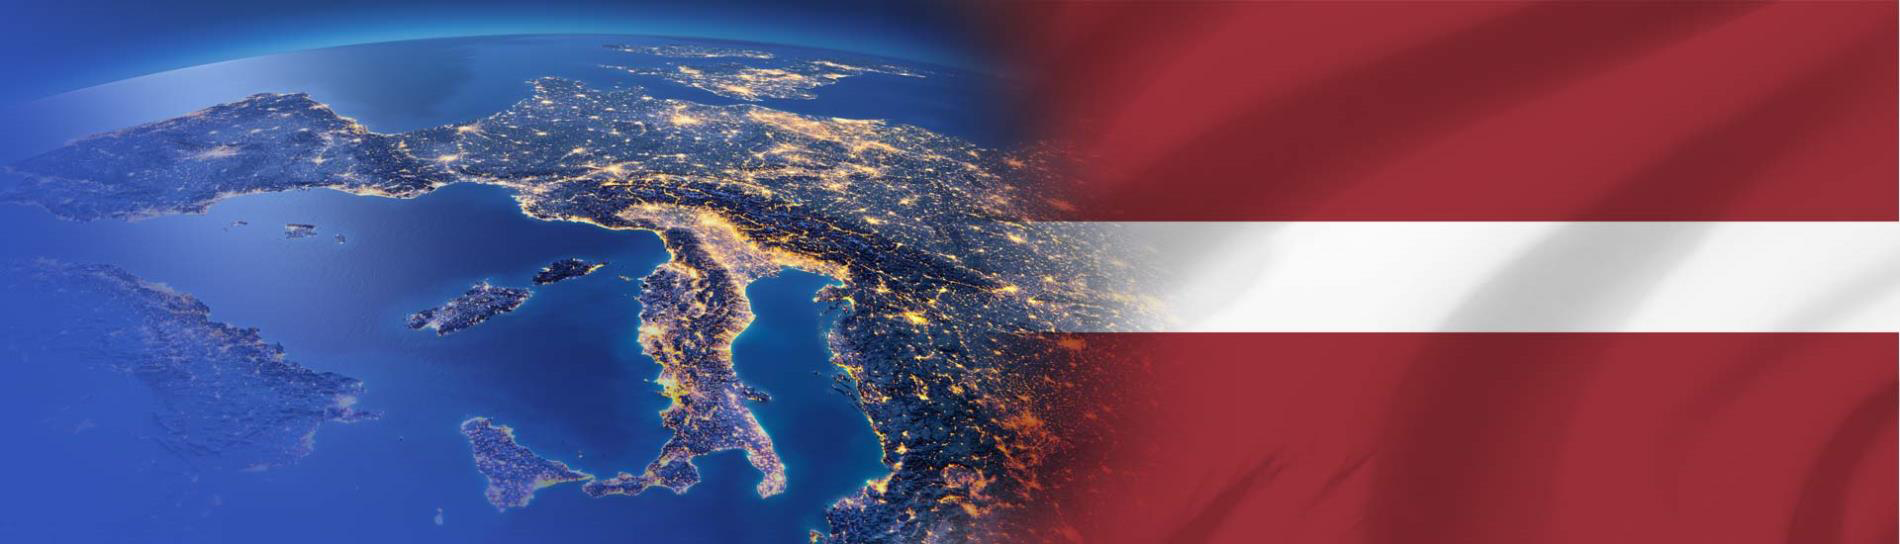 flamuri i Letonisë në kontinentin e Evropës